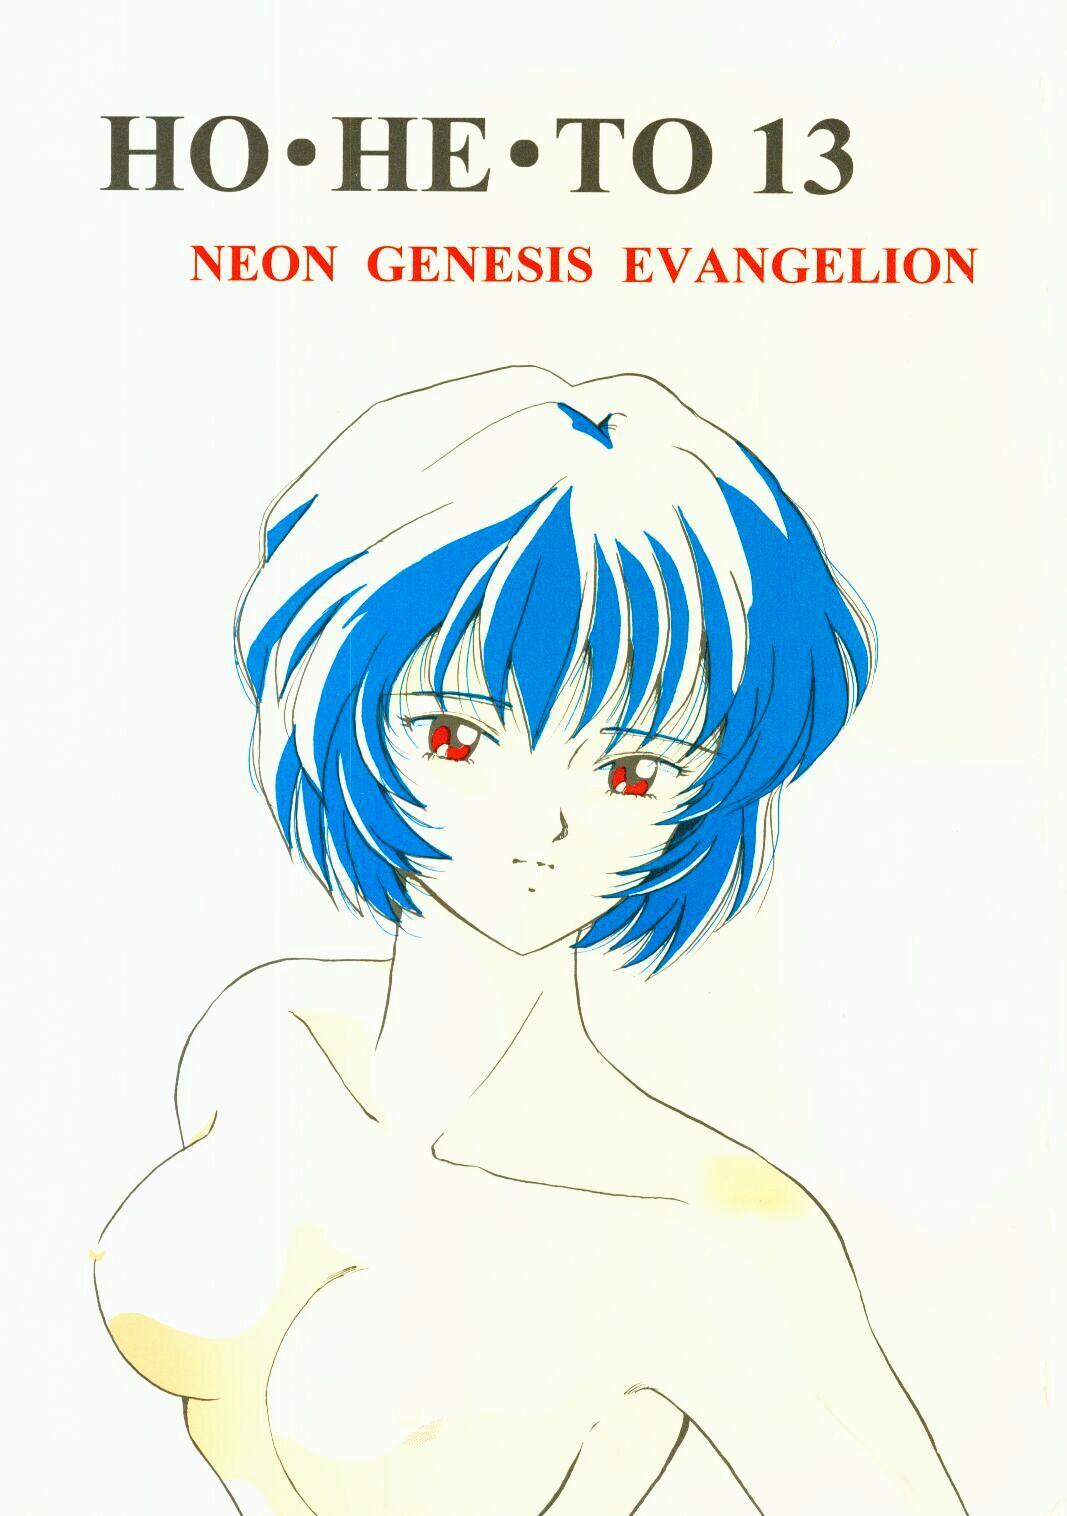 Ride (C50) [Studio Boxer (Shima Takashi, Taka) HOHETO 13 (Neon Genesis Evangelion) - Neon genesis evangelion Gayporn - Page 1